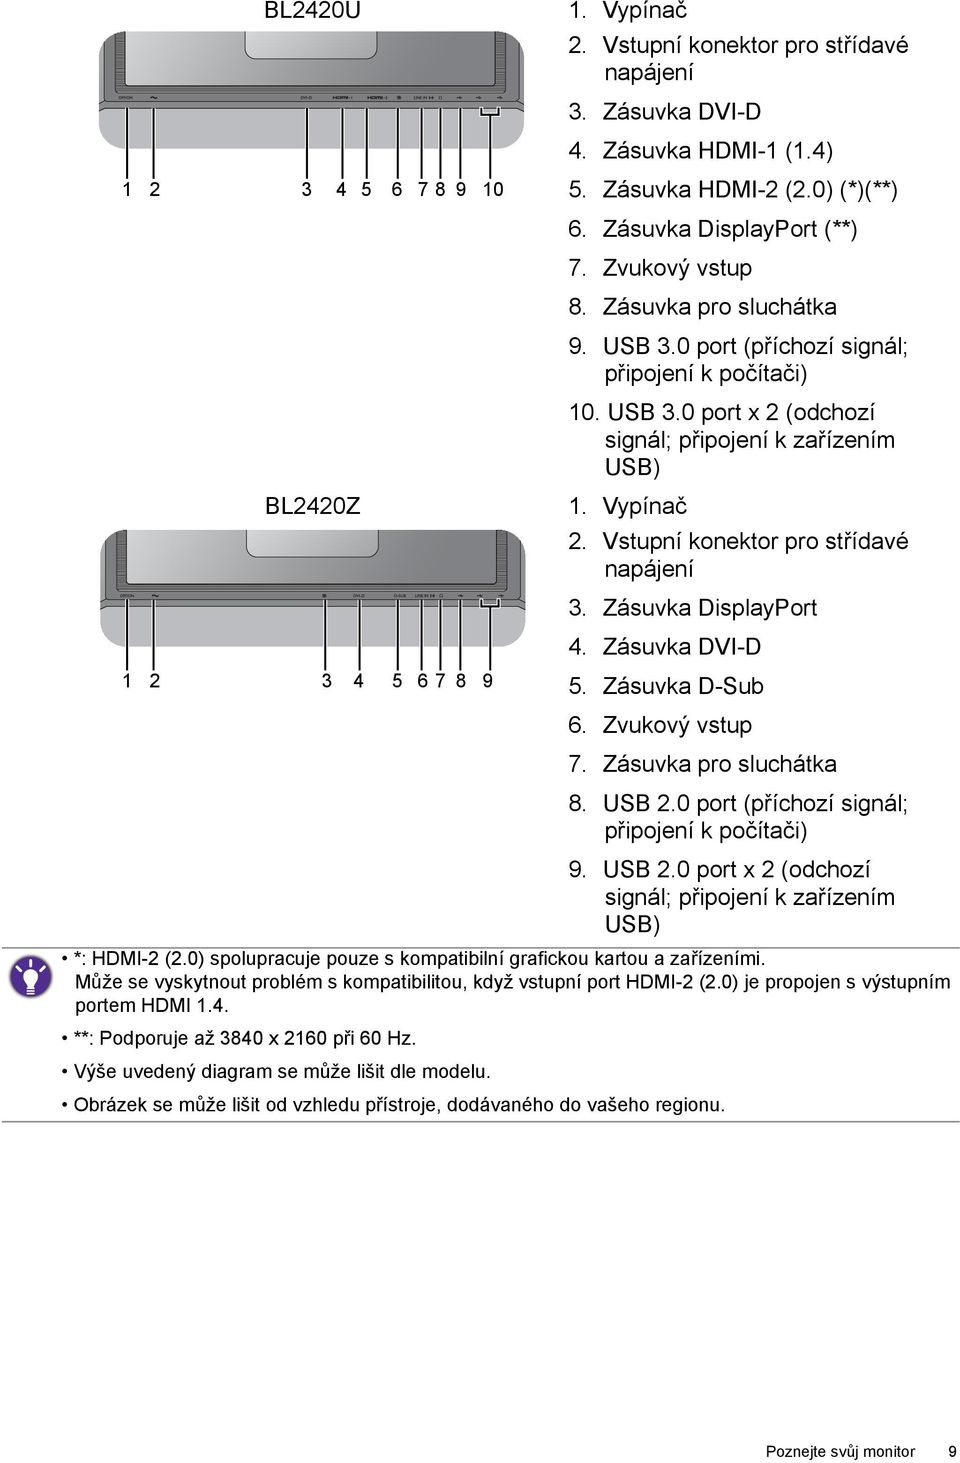 Vypínač 2. Vstupní konektor pro střídavé napájení 3. Zásuvka DisplayPort 4. Zásuvka DVI-D 5. Zásuvka D-Sub 6. Zvukový vstup 7. Zásuvka pro sluchátka 8. USB 2.